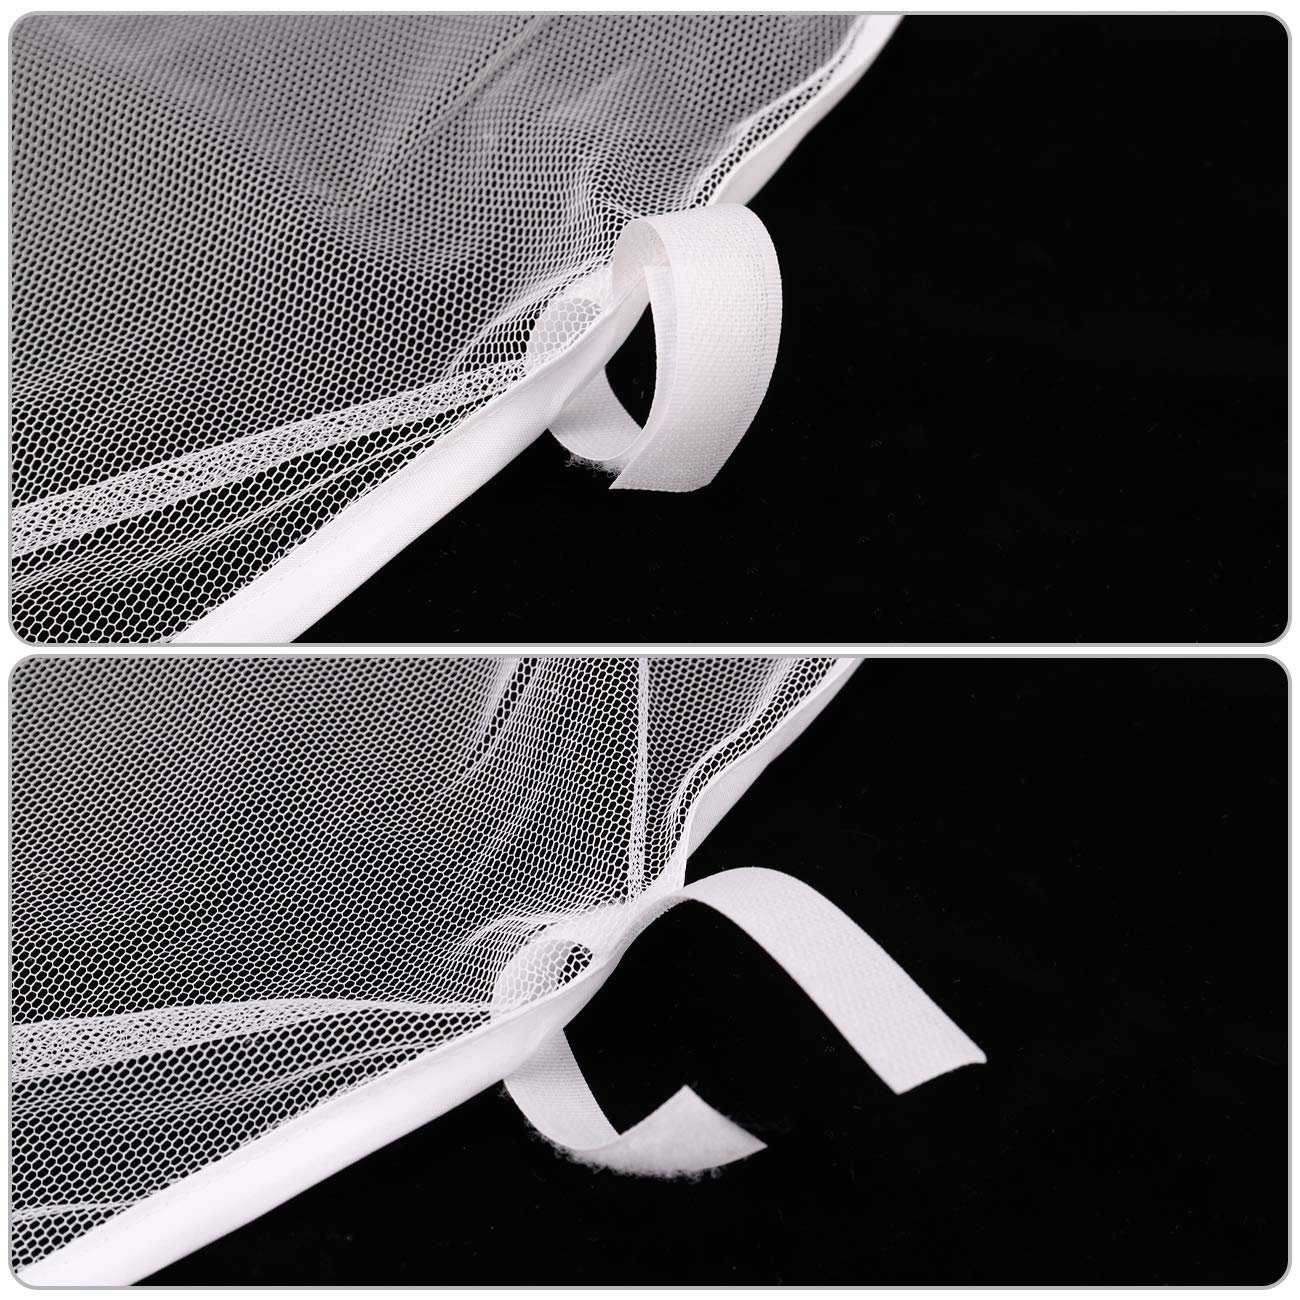 Insektenschutz 3x3m, Sekey Moskitonetz Weiß Fliegengitter und Reißverschluss für Klettbänder Pavillon mit